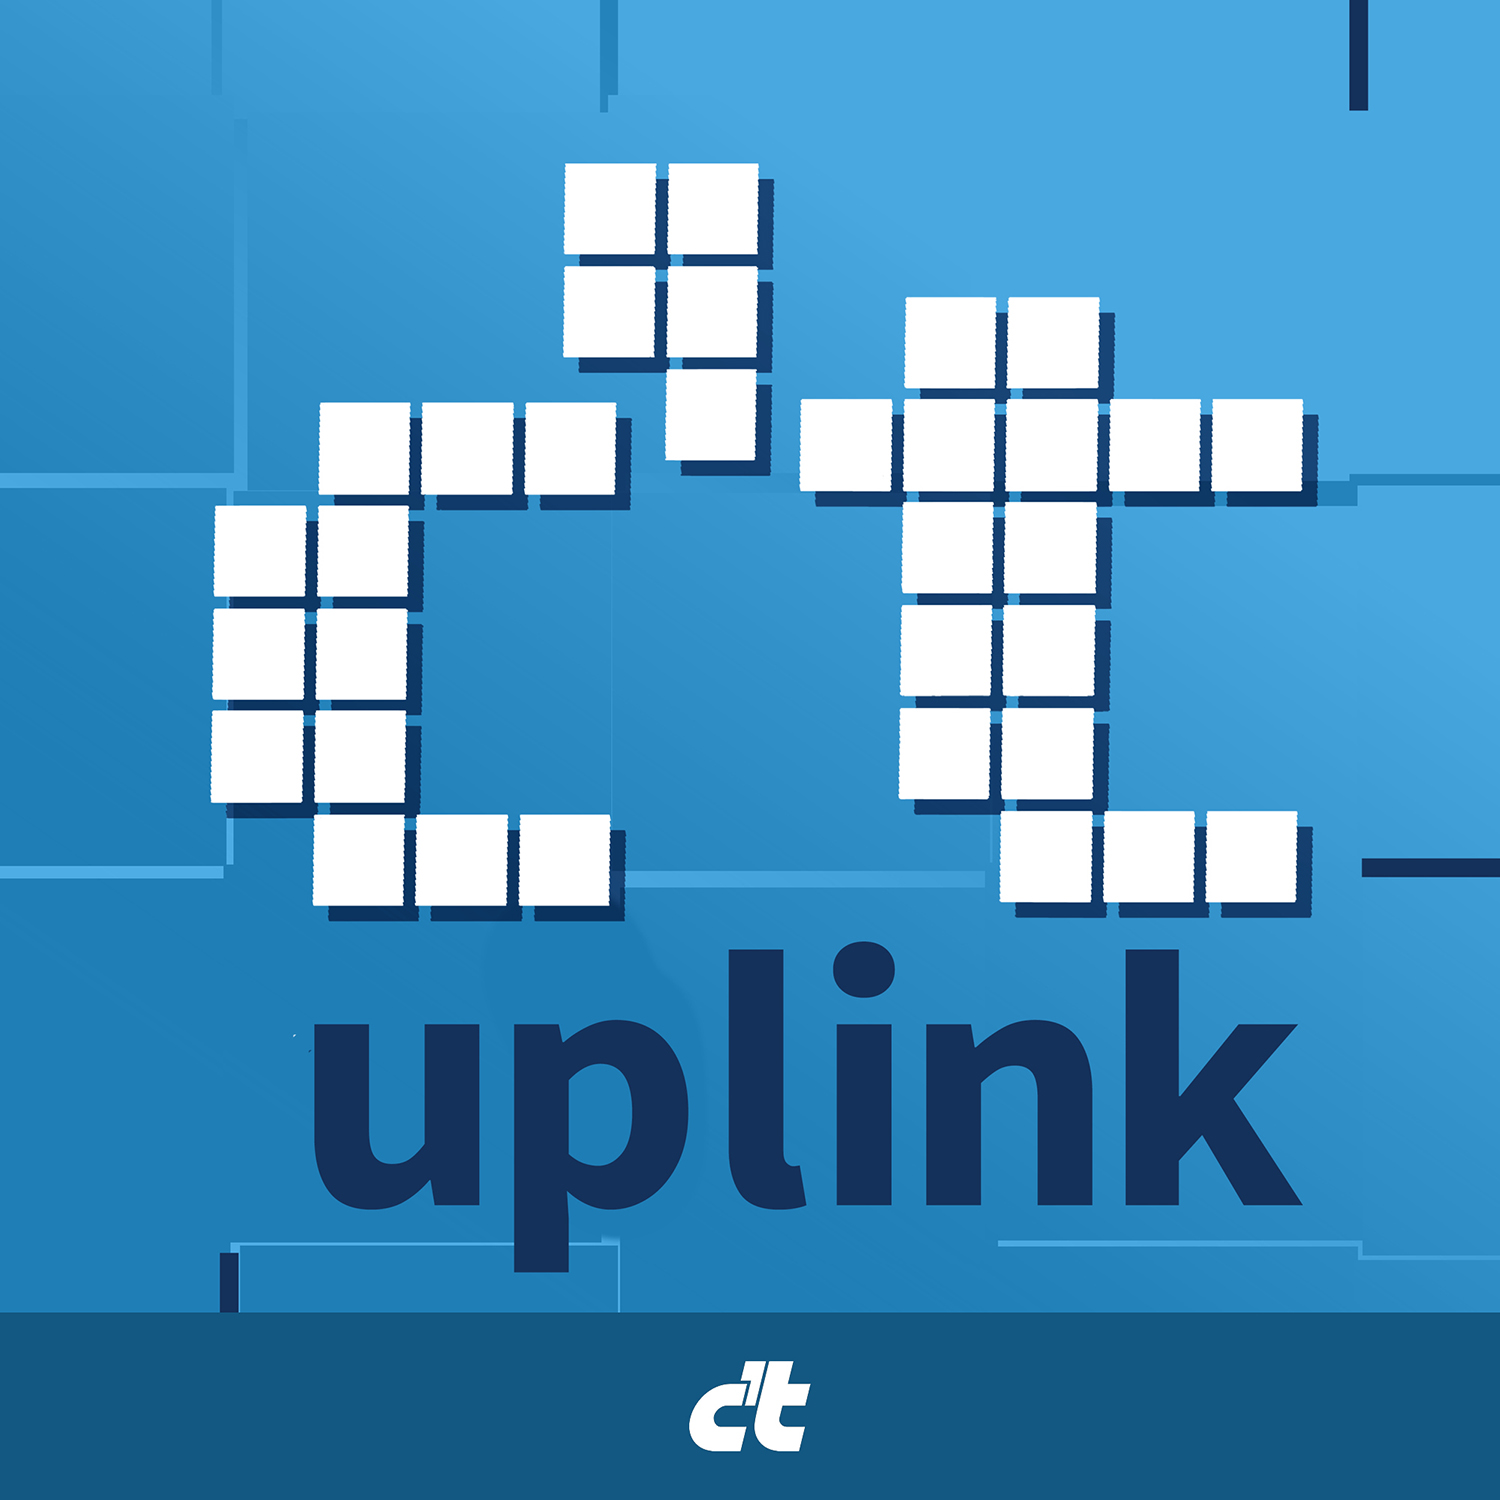 Linux für jeden: Weg mit Windows: So steigt man einfach auf Linux um | c’t uplink